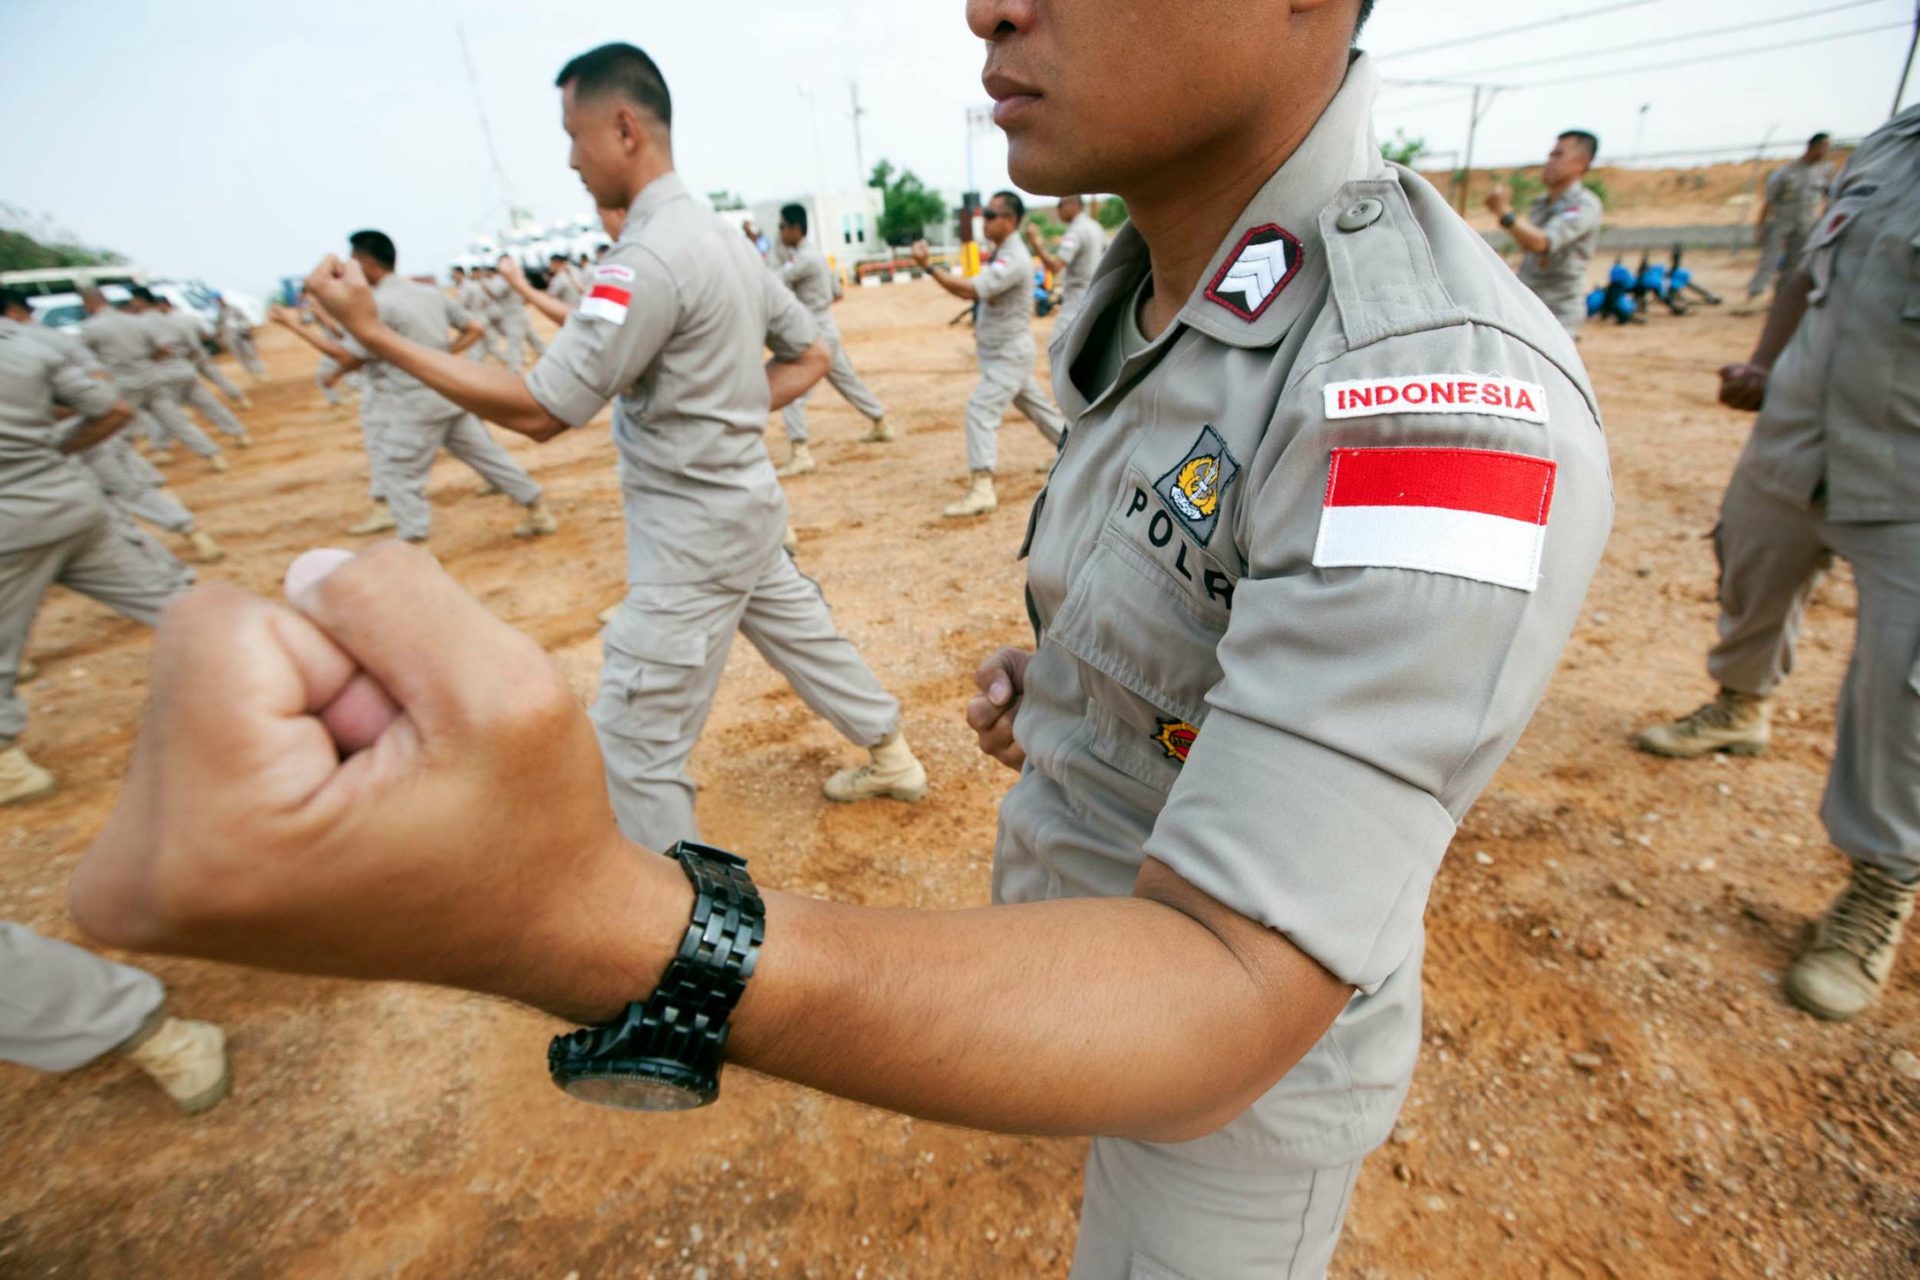 L'Indonésie a décidé d'utiliser la manière forte face à la drogue (Photo:UNAMID/Flickr/CC BY-NC-ND 2.0)